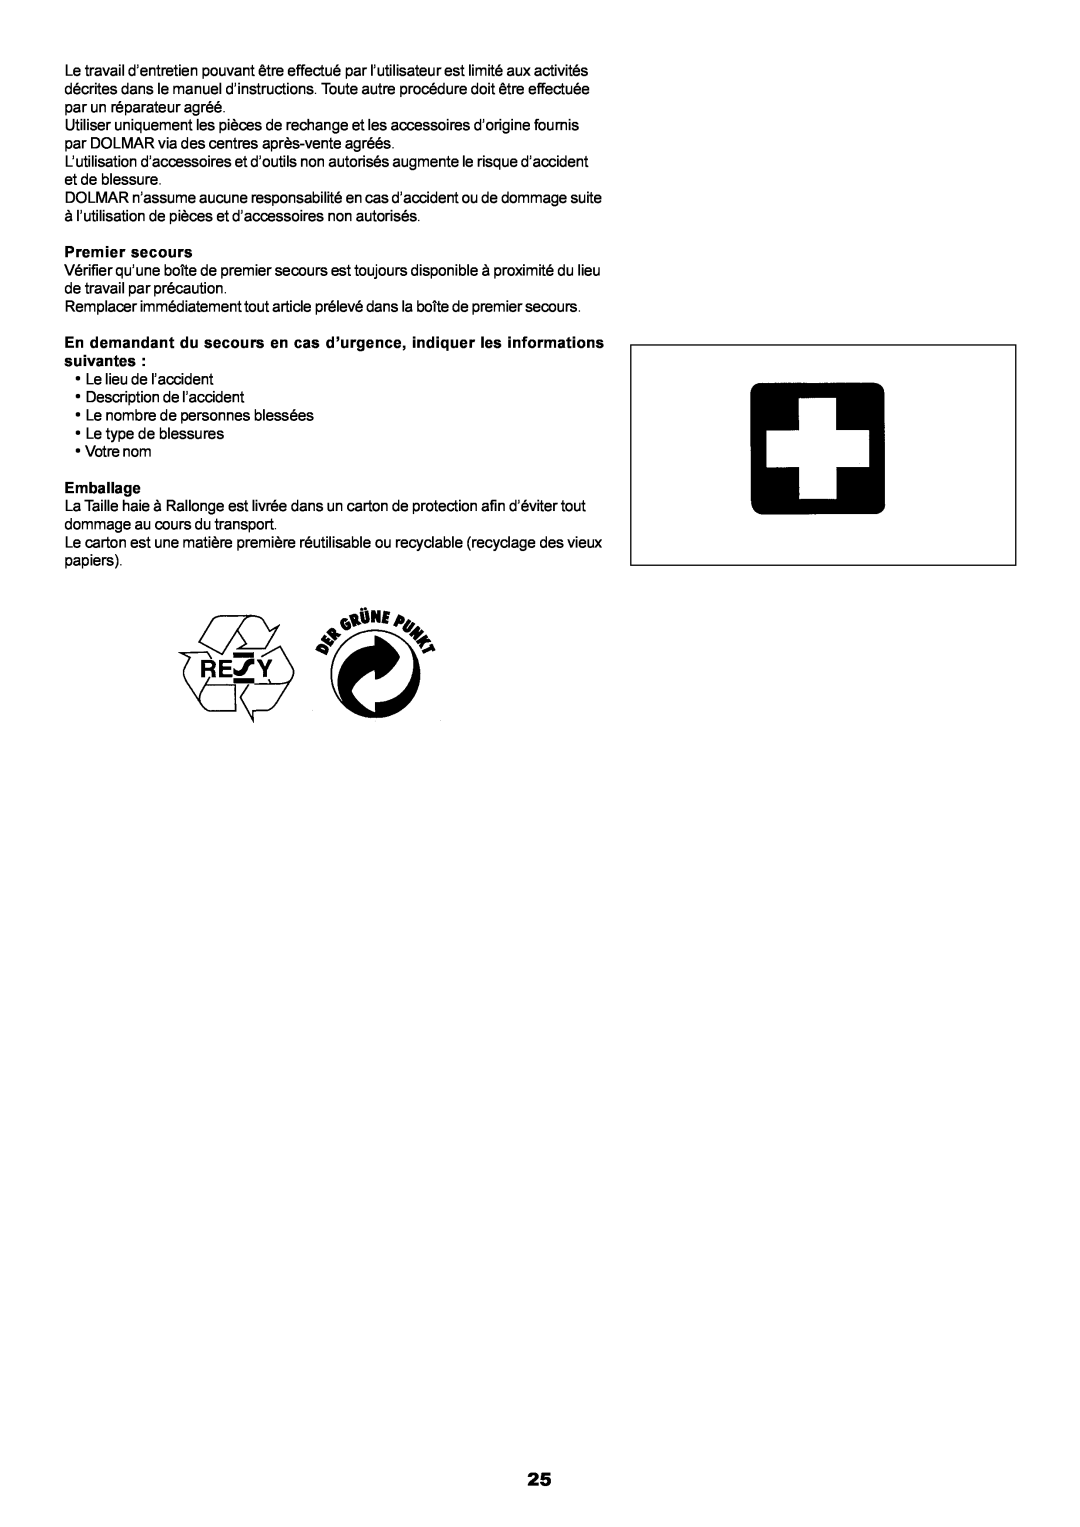 Dolmar MH-2556 instruction manual à l’utilisation de pièces et d’accessoires non autorisés, Premier secours, Emballage 